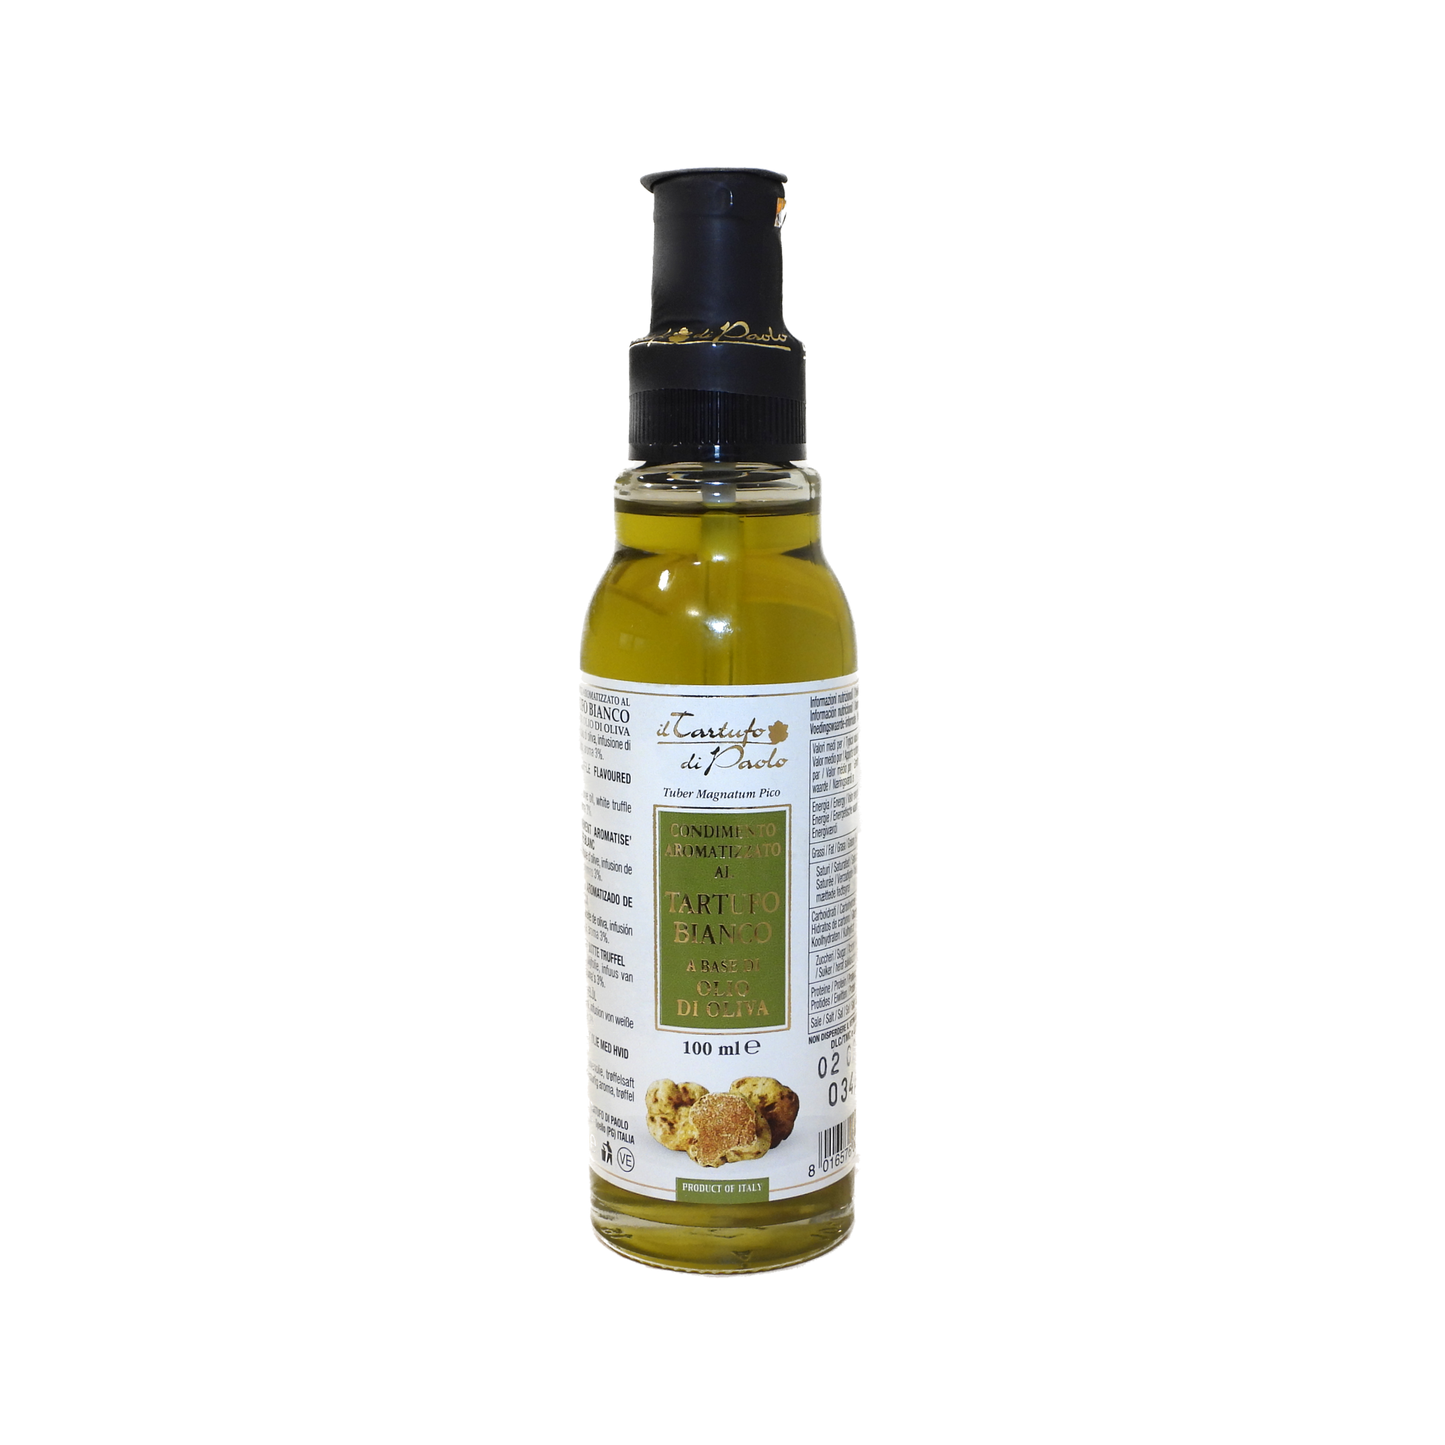 Condimento Aromatizzato a base di Olio d'oliva al tartufo bianco con fette di tartufo essiccato